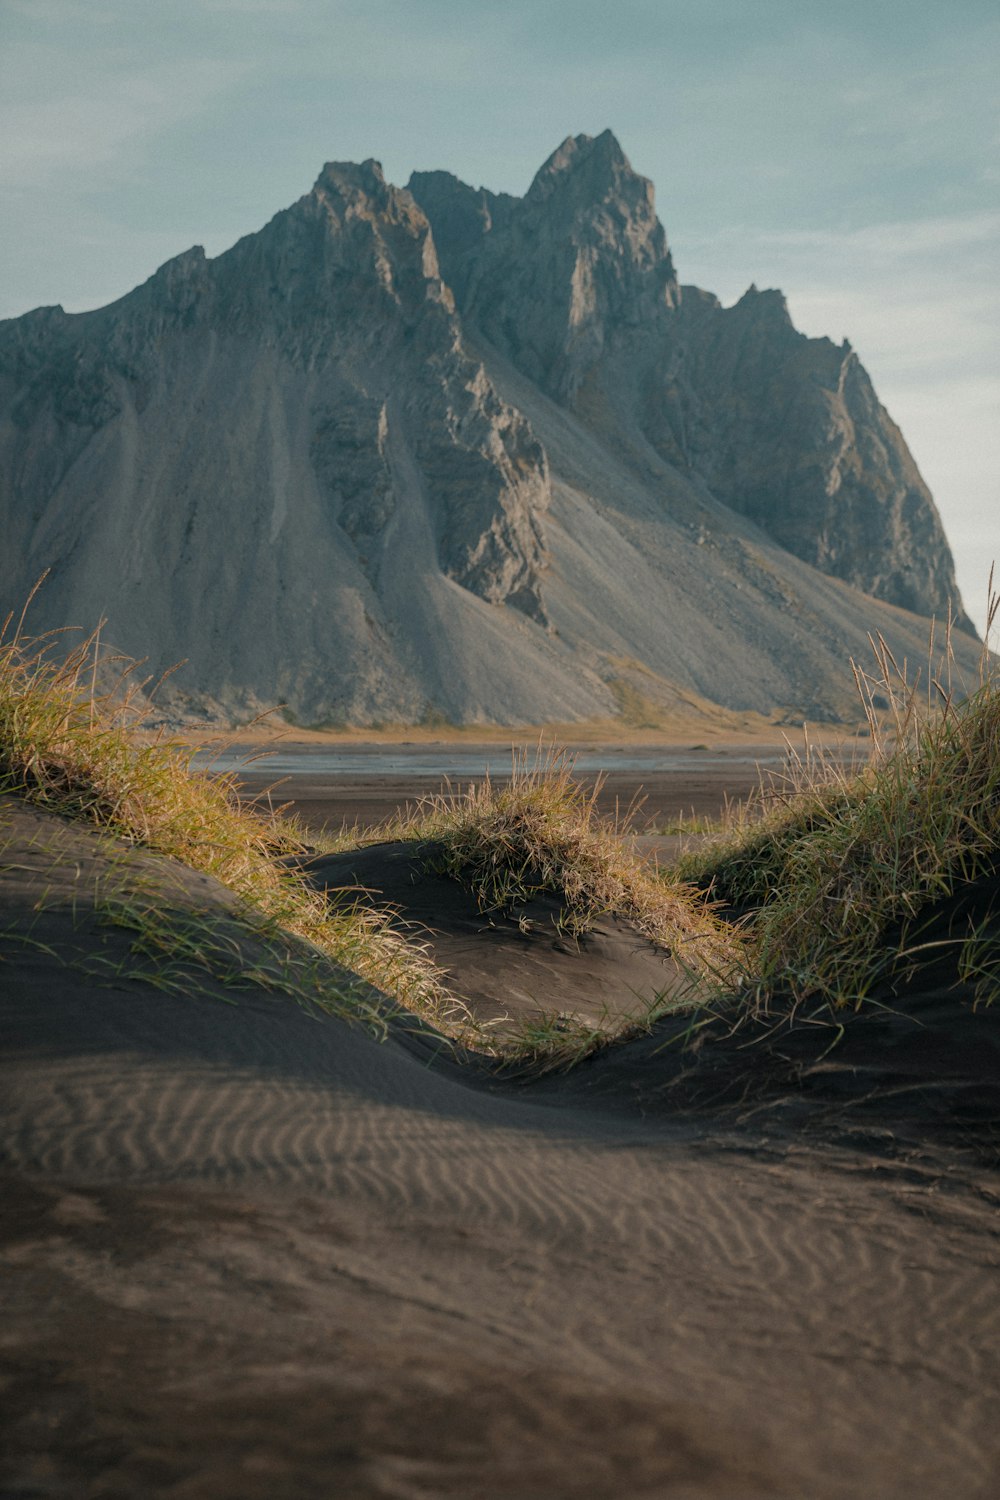 Una catena montuosa in lontananza con erba che cresce dalla sabbia